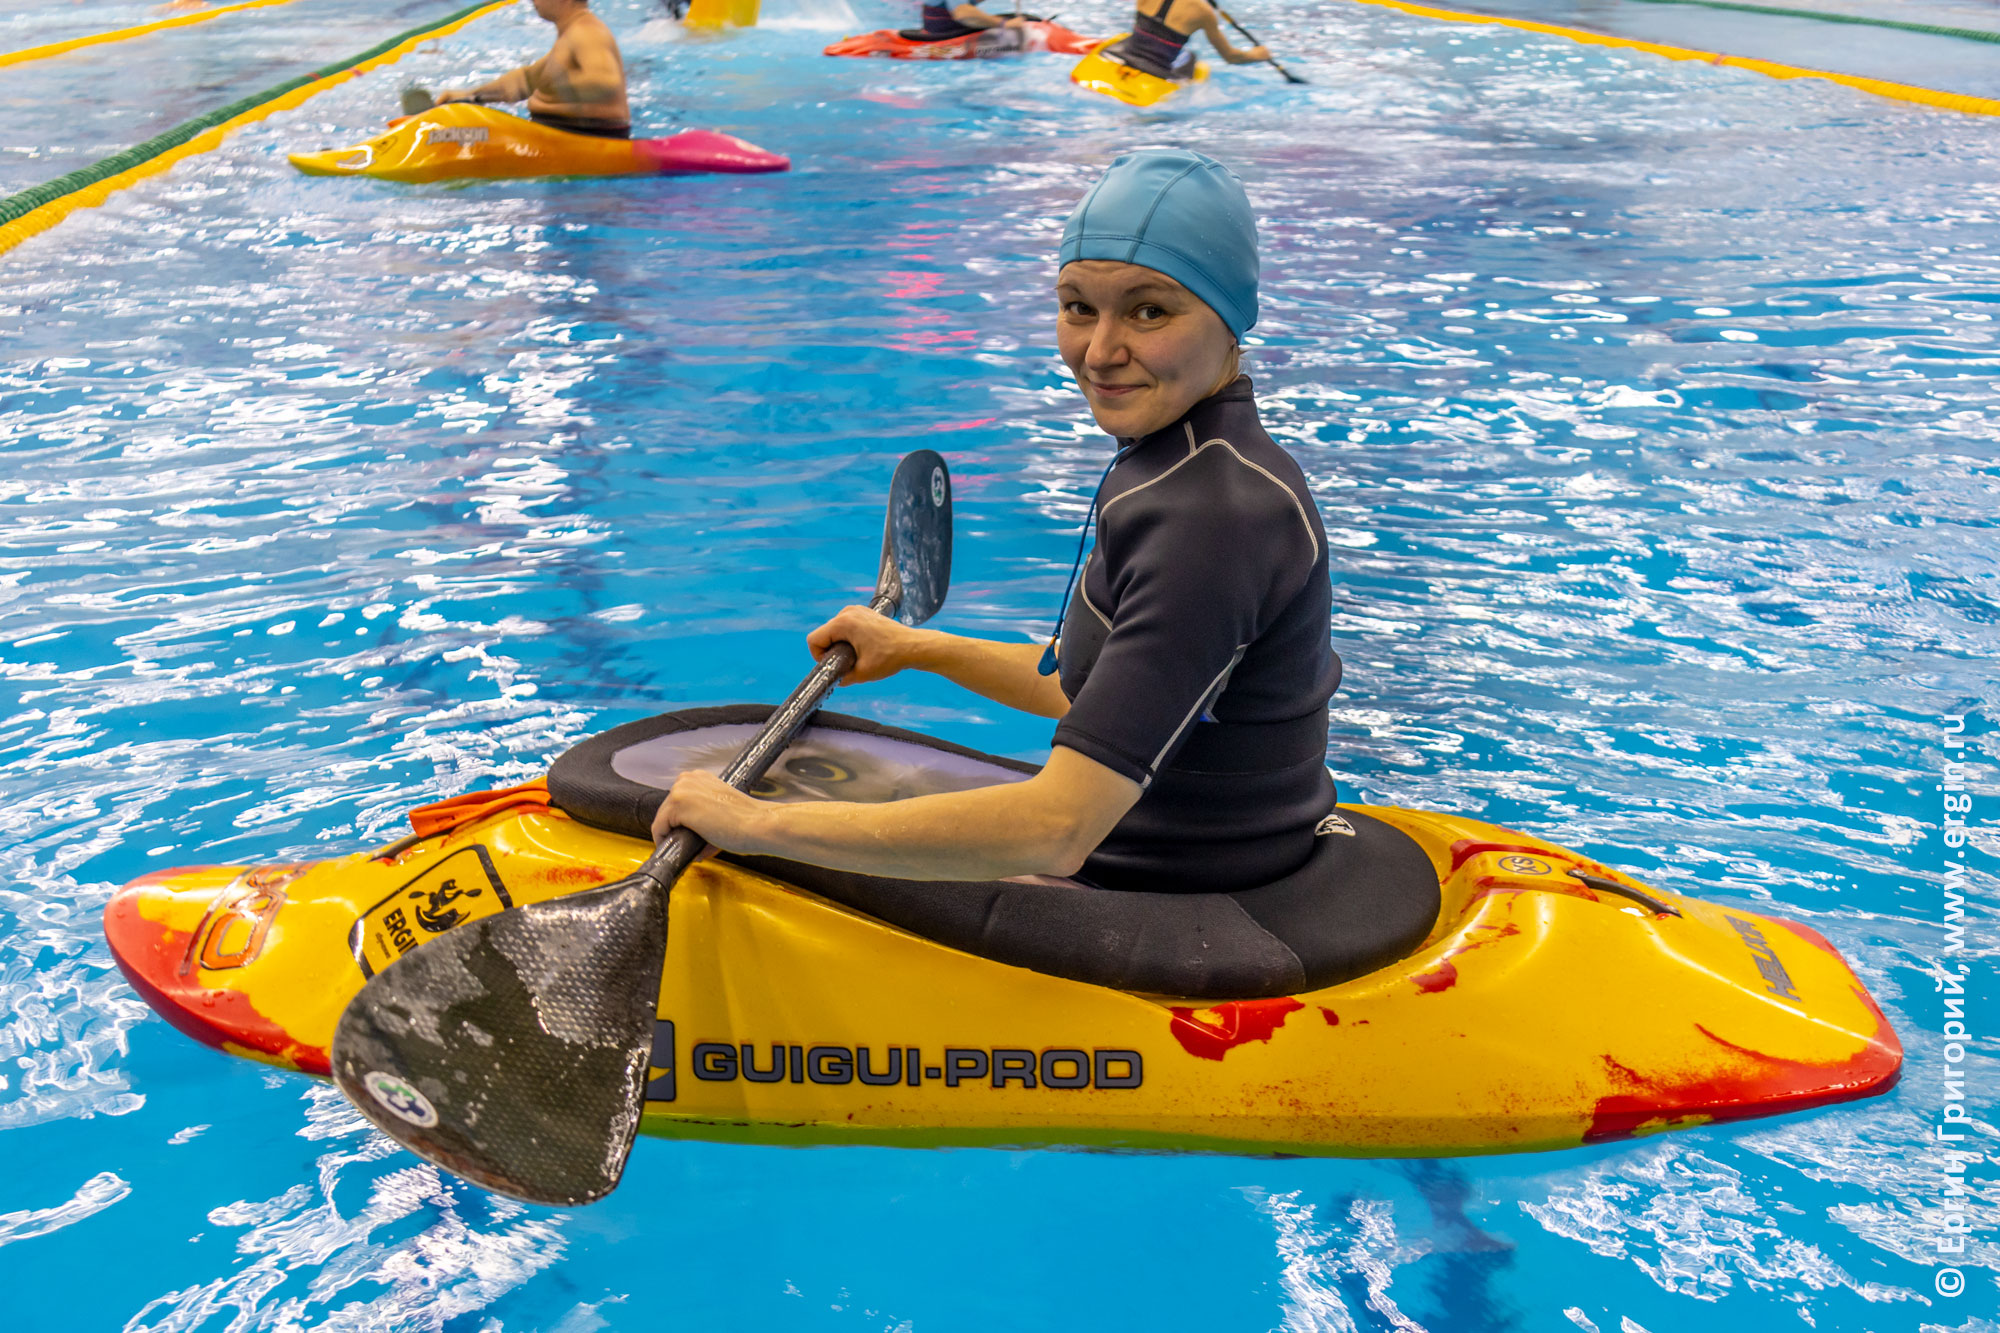 Девушка-каякер на каяке для фристайла на бурной воде EXO Kayaks GuiGui-prod Helixir-2018 размера XS тренируется в бассейне